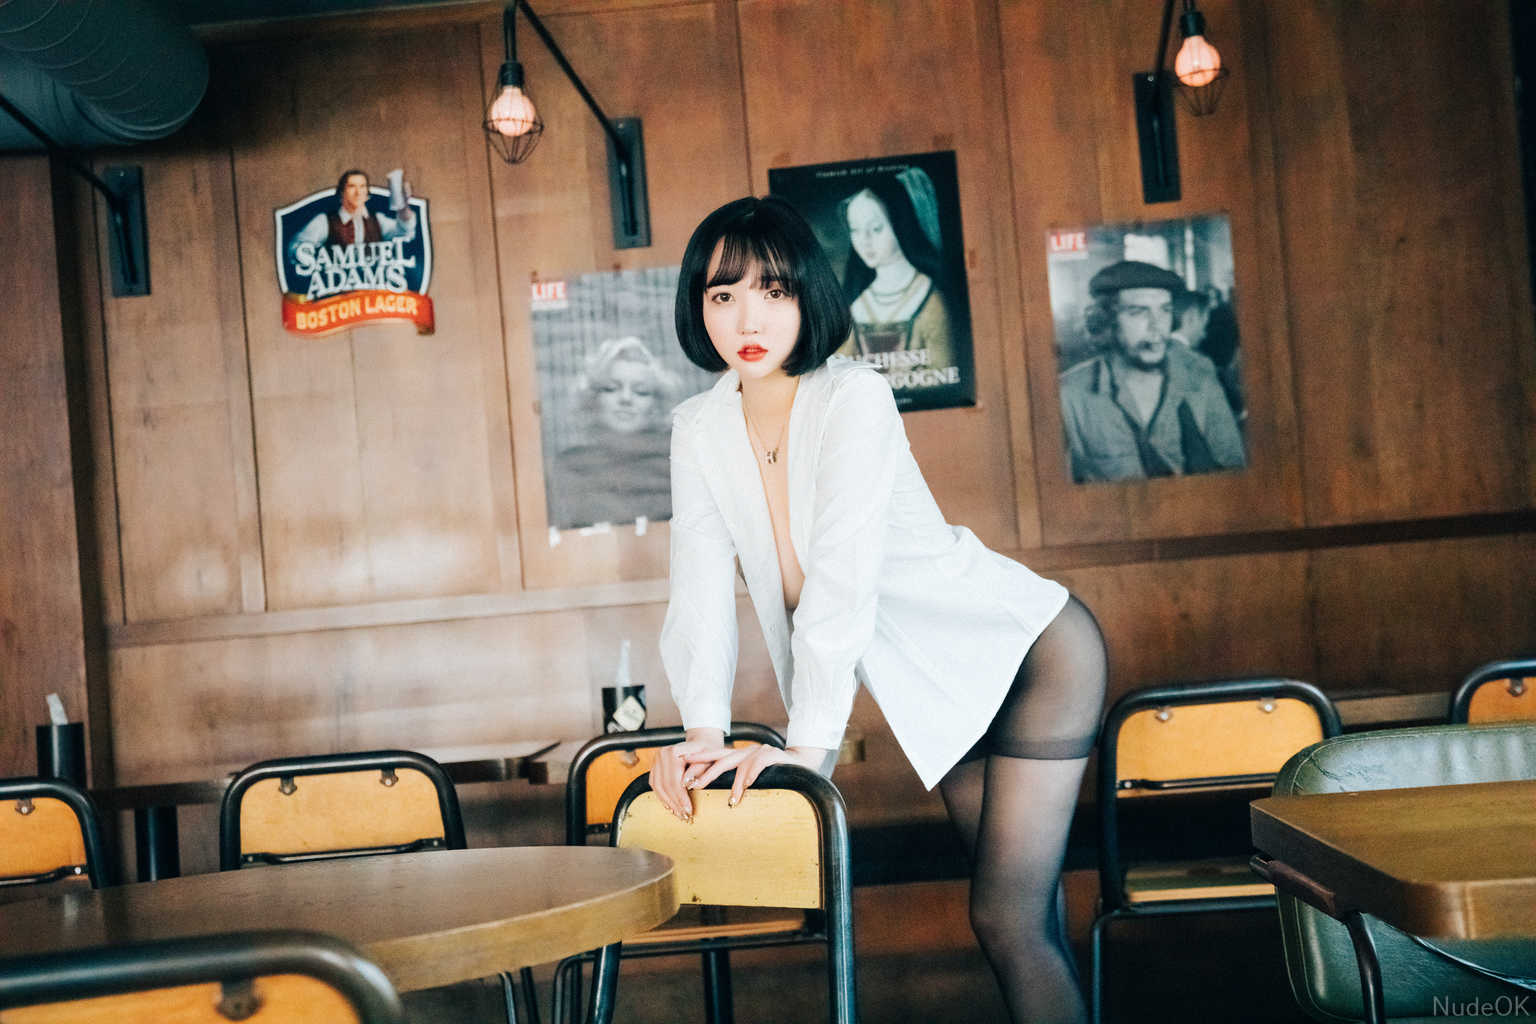 Son Ye Eun Uncensored Picture NudeOK.Com